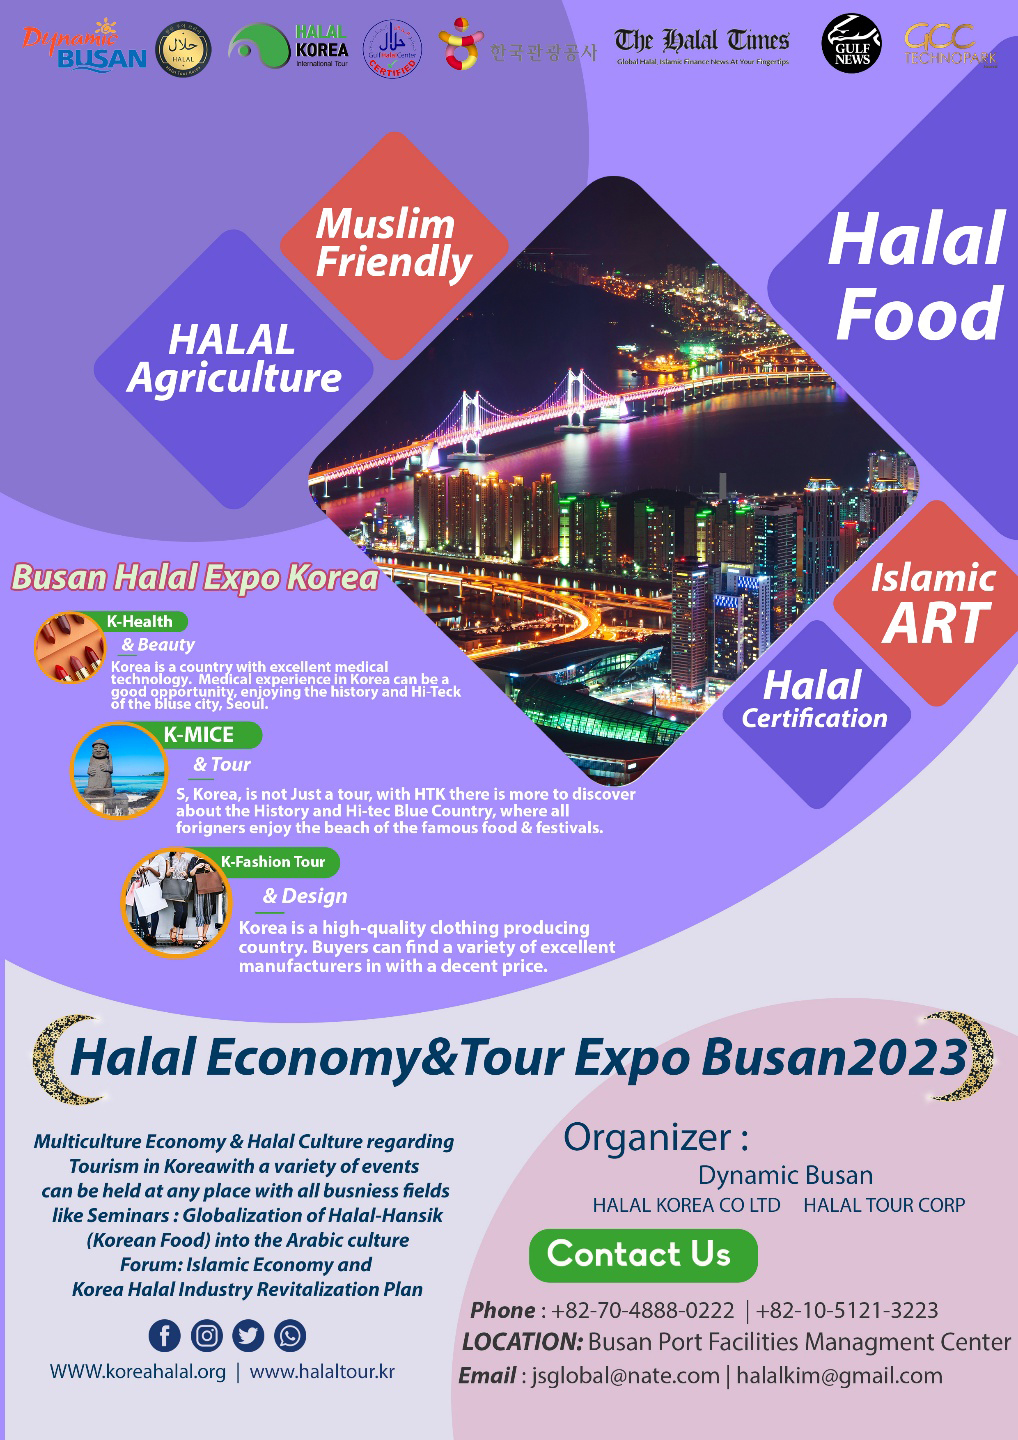 Halal Economy & Tour Busan 2023